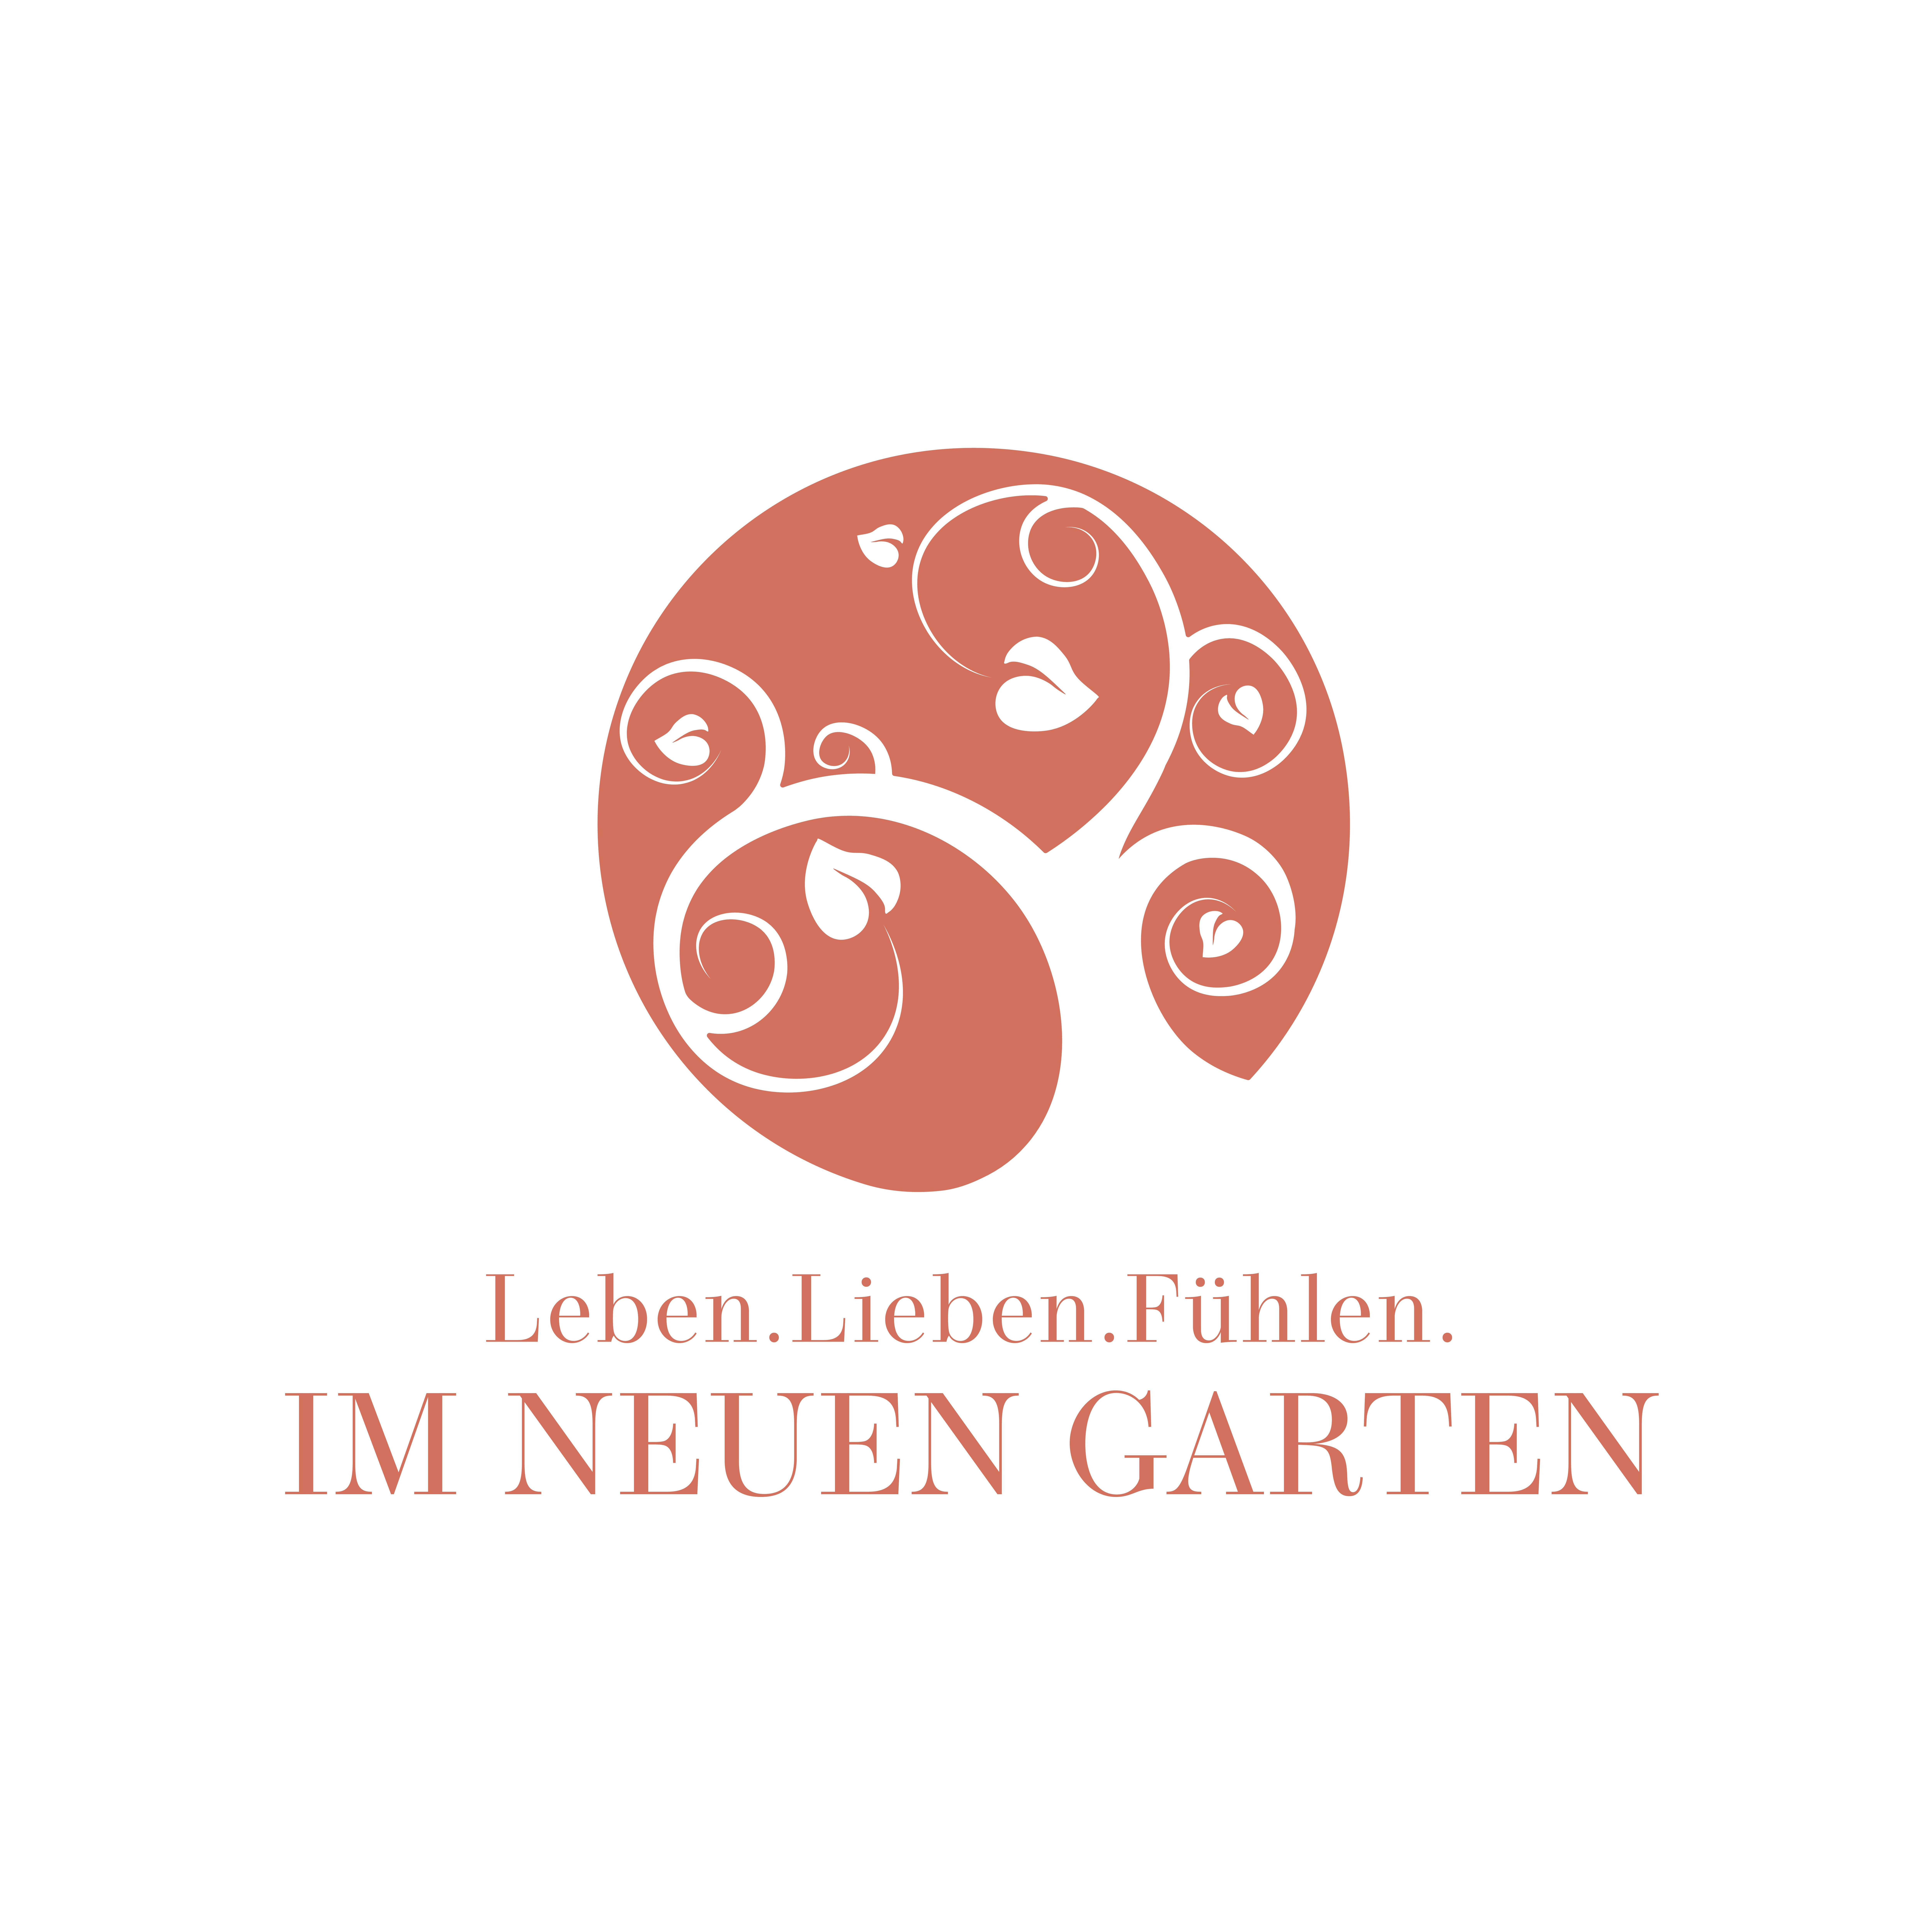 IM NEUEN GARTEN in Haar Kreis München - Logo